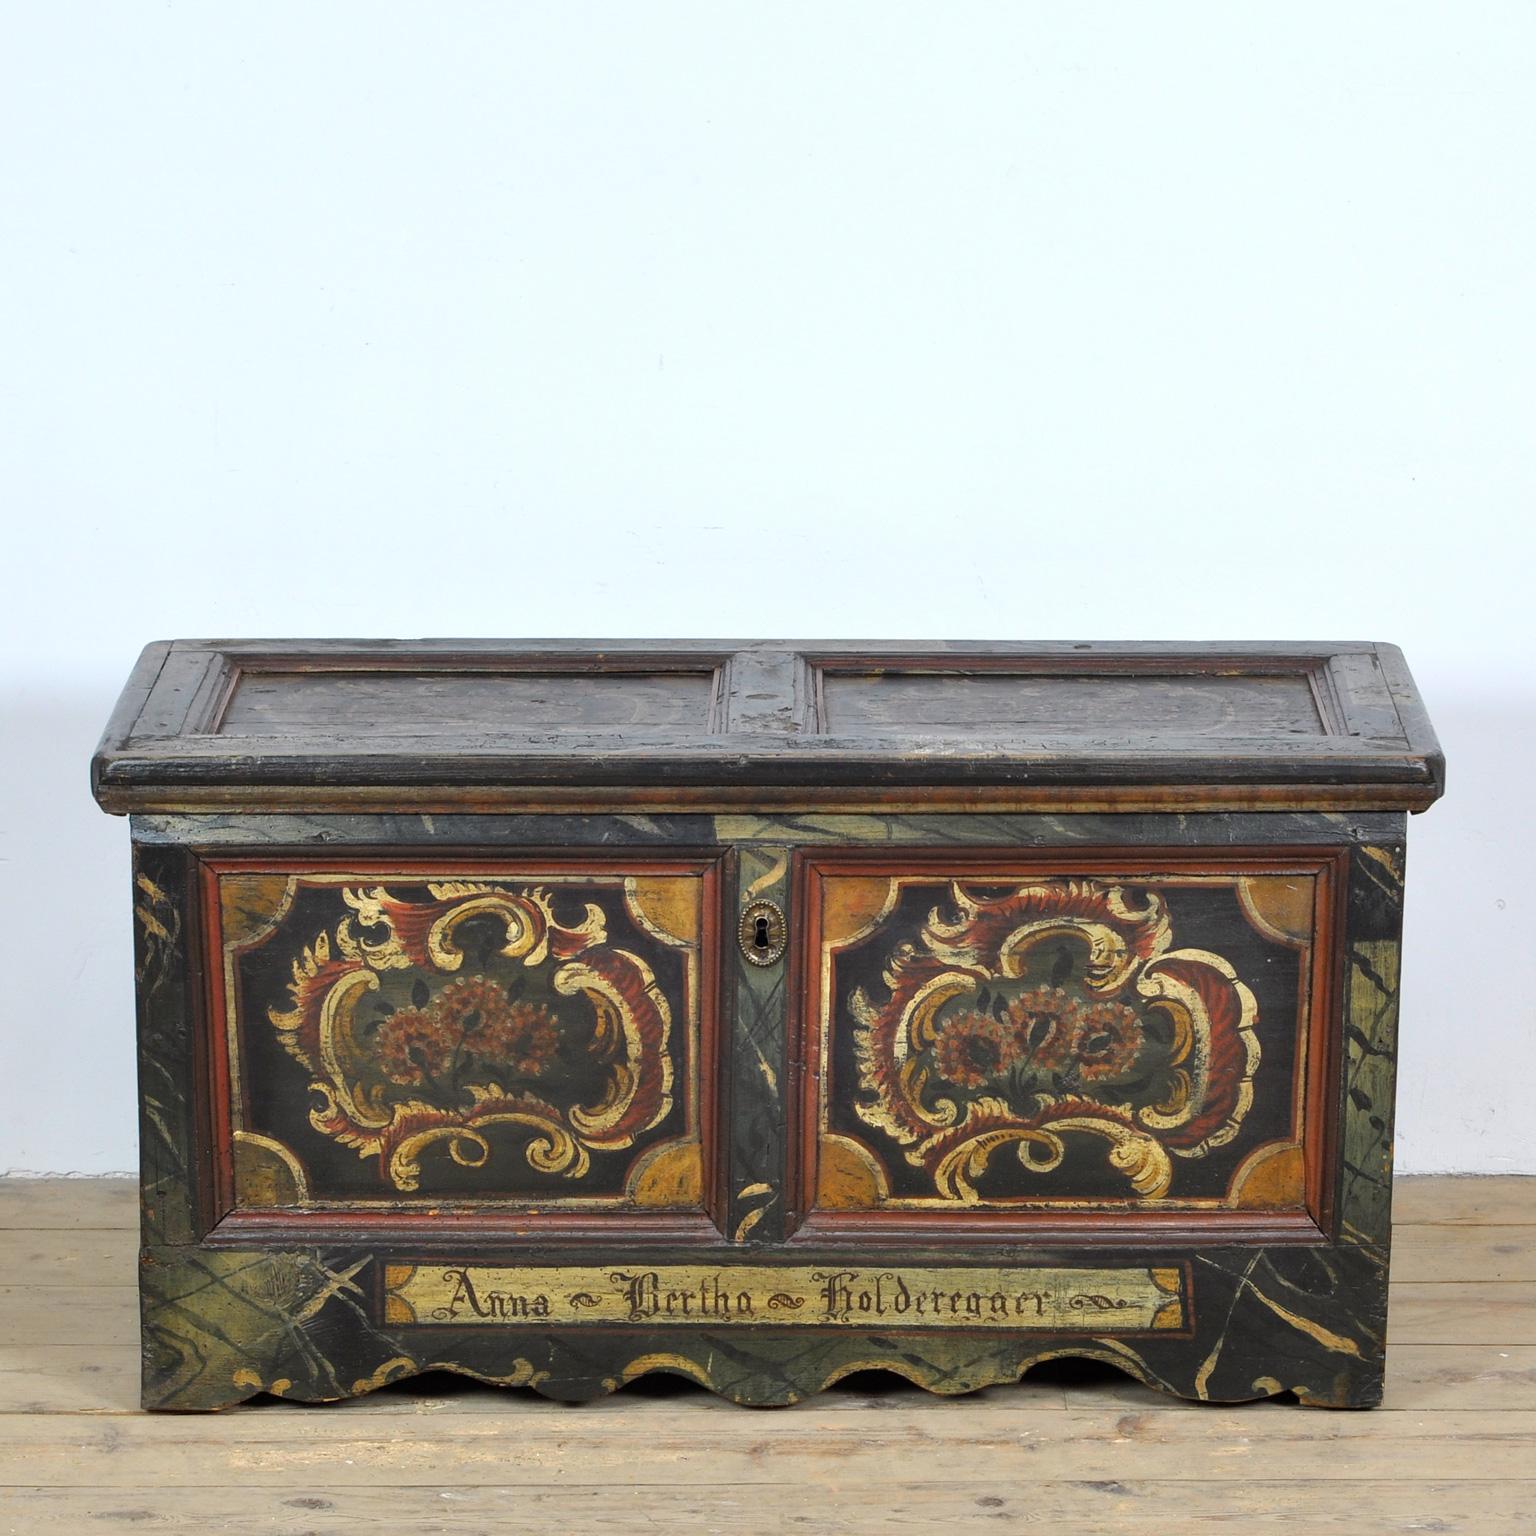 Coffre de dot allemand réalisé vers 1820 pour une certaine Anna Bertha Holderegger. Peint à la main avec de magnifiques détails. Les détails en fer, comme les charnières, sont forgés à la main. La boîte est fabriquée en pin et en chêne. L'intérieur